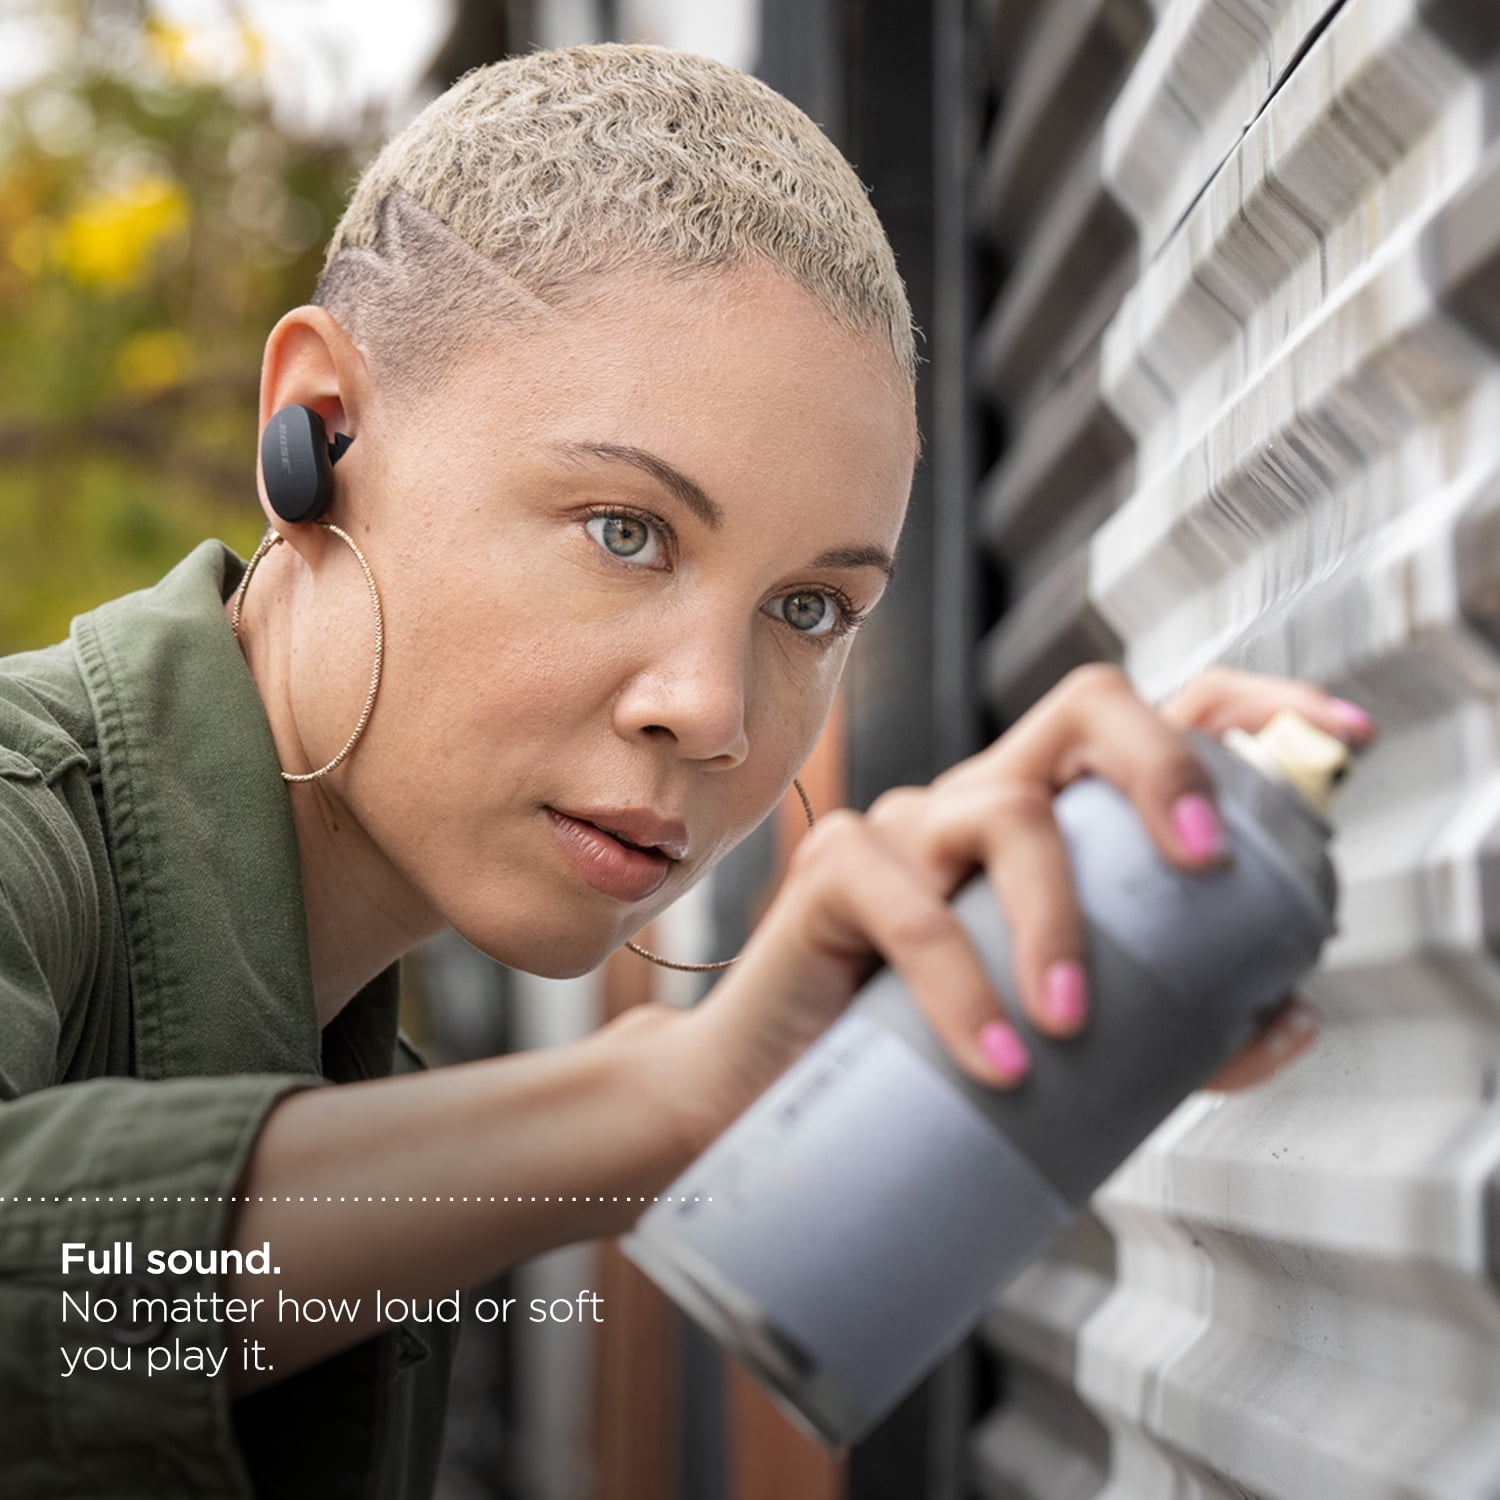 オーディオ機器 イヤフォン Bose QuietComfort Earbuds Noise Cancelling True Wireless Bluetooth  Headphones